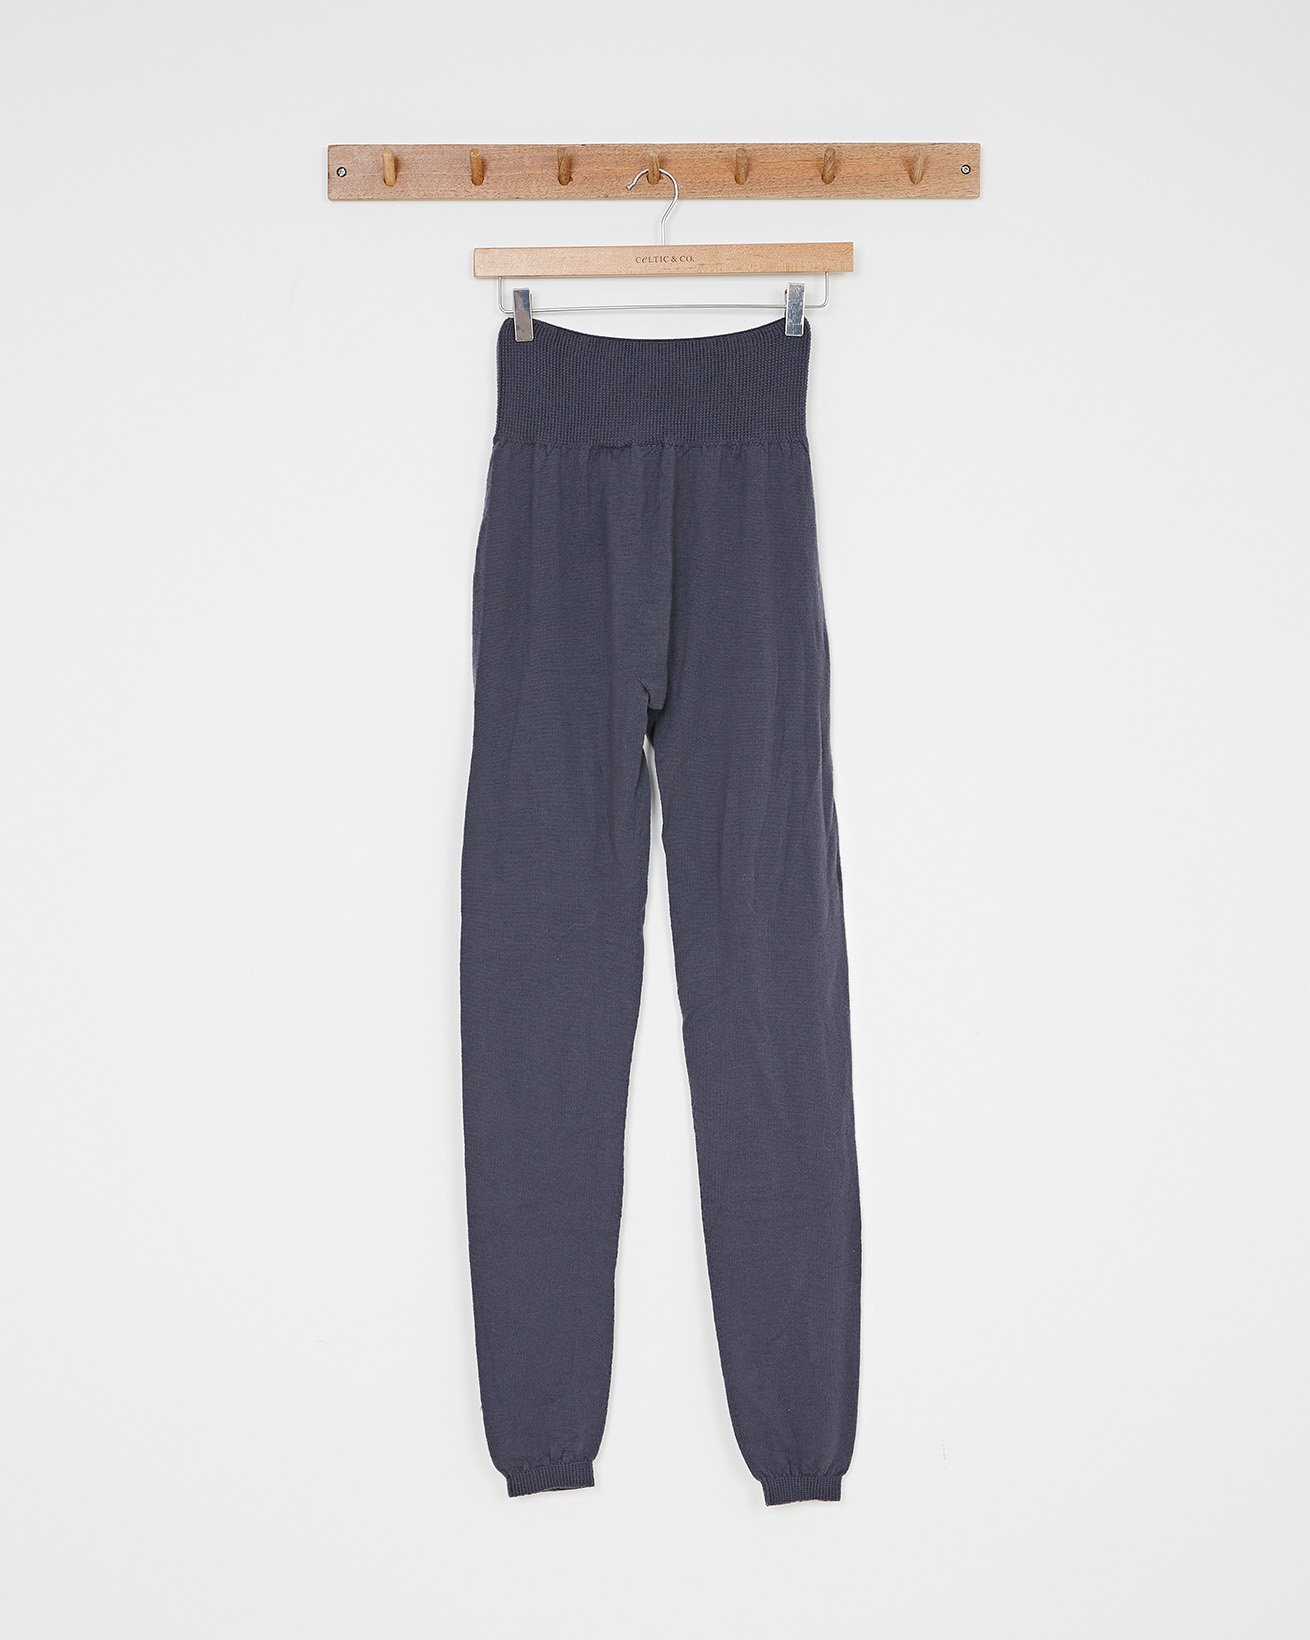 Merino Lounge Pants / Slate Grey / S